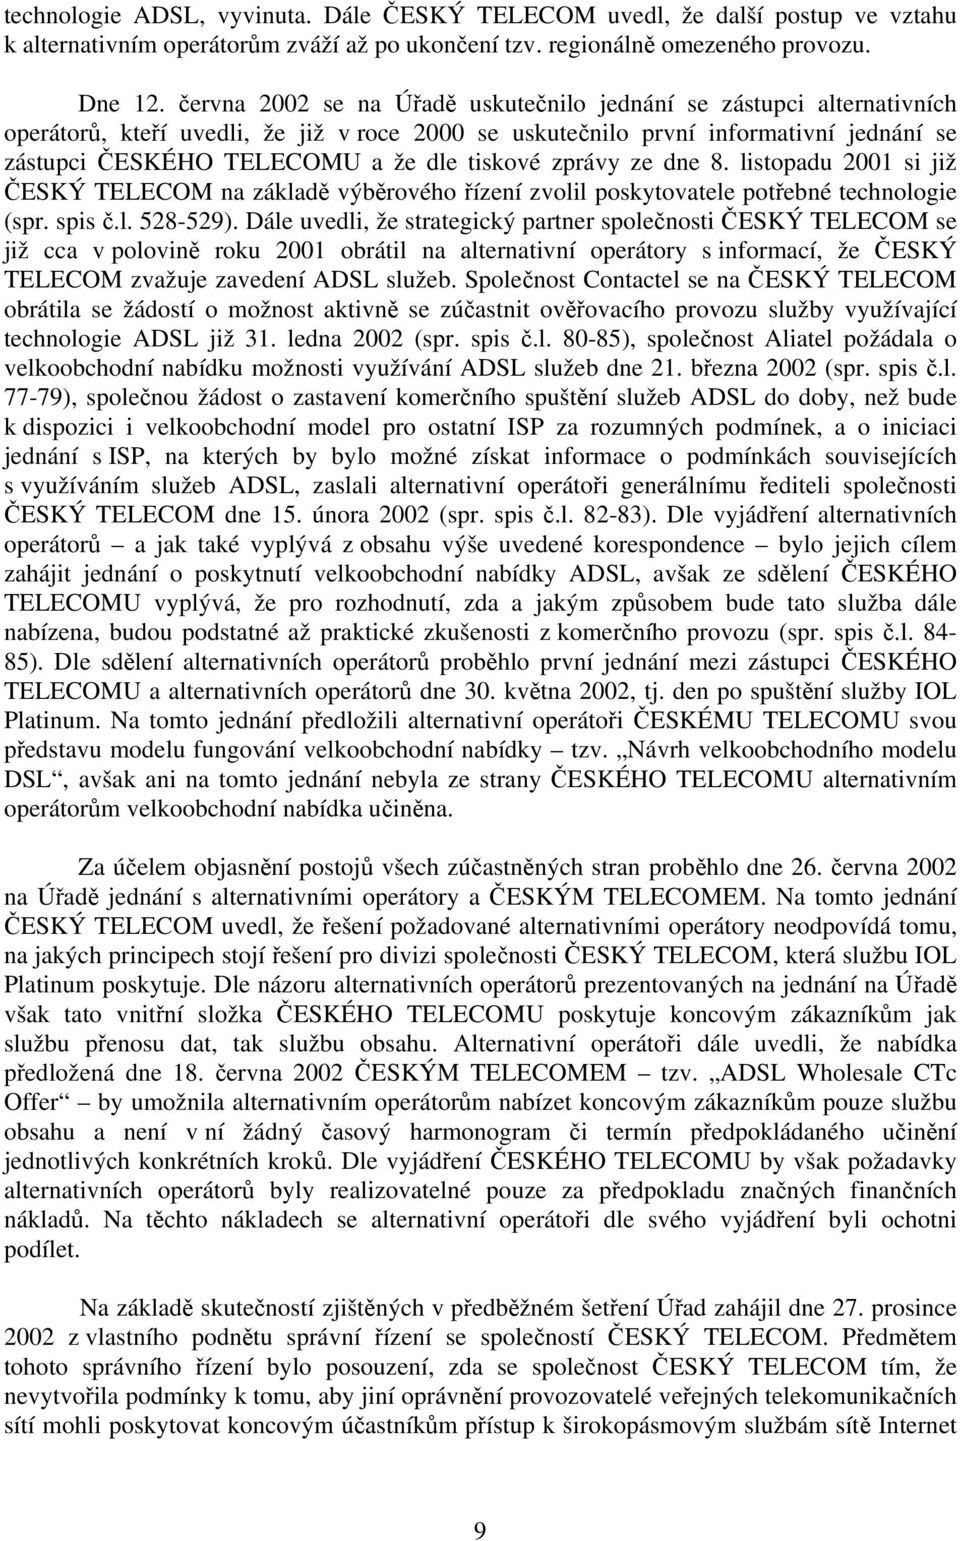 tiskové zprávy ze dne 8. listopadu 2001 si již ČESKÝ TELECOM na základě výběrového řízení zvolil poskytovatele potřebné technologie (spr. spis č.l. 528-529).